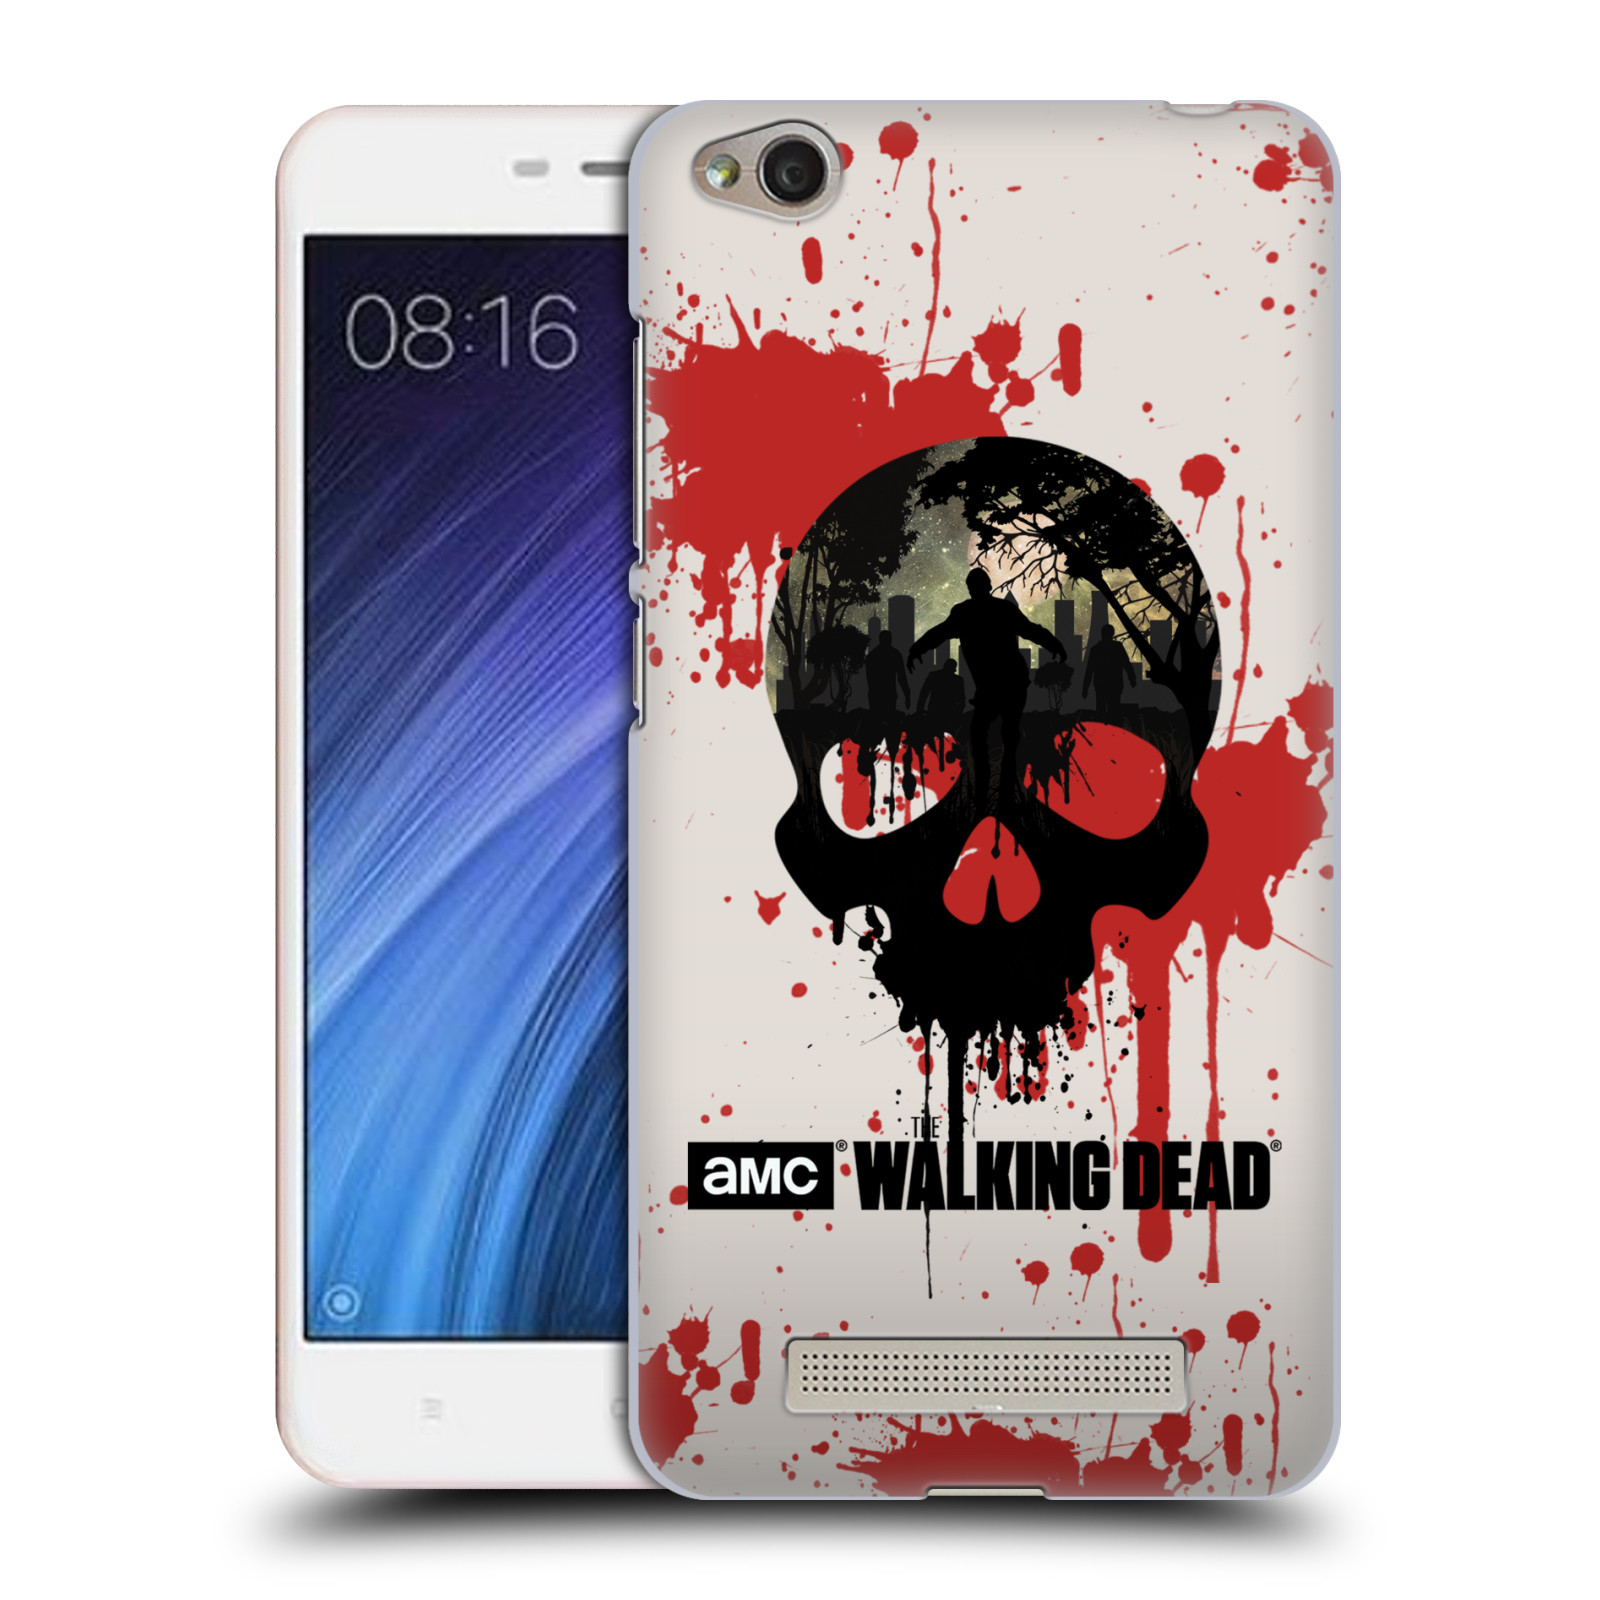 Plastové pouzdro na mobil Xiaomi Redmi 4A HEAD CASE Živí mrtví - Lebka (Plastový kryt či obal na mobilní telefon s licencovaným motivem Živí mrtví / The Walking Dead pro Xiaomi Redmi 4A)